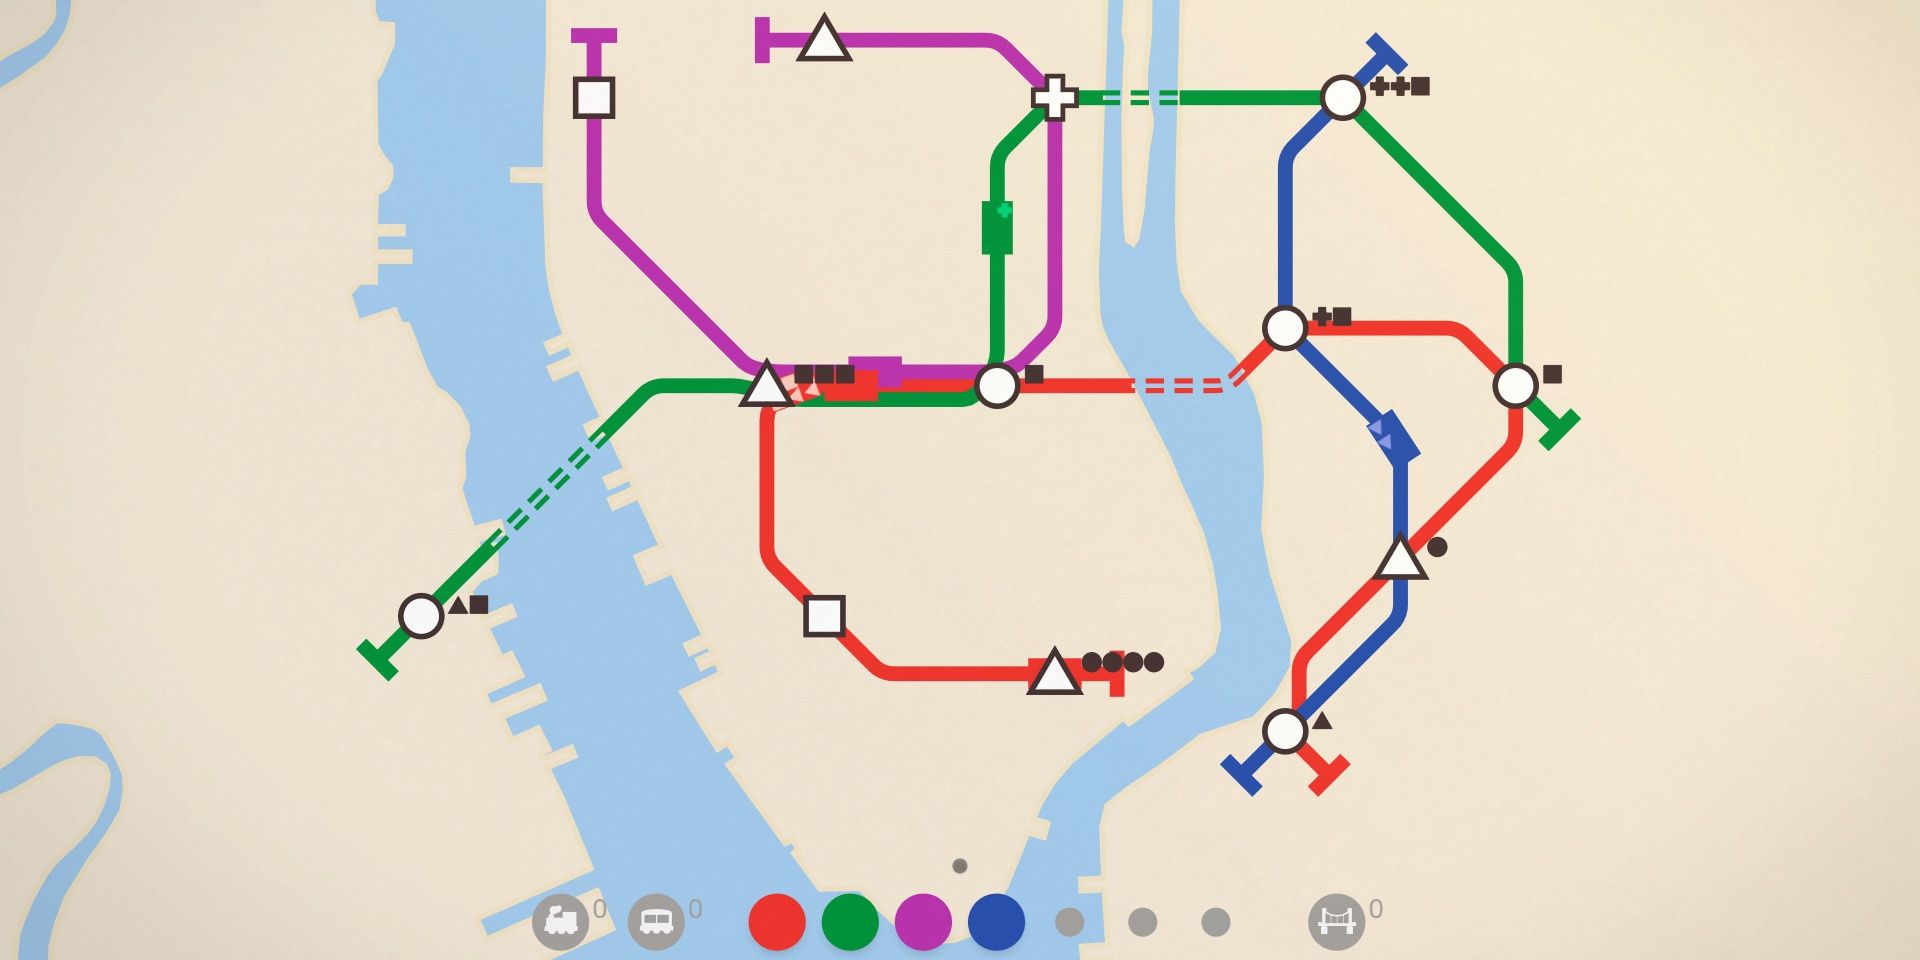 A basic transit map in Mini Metro